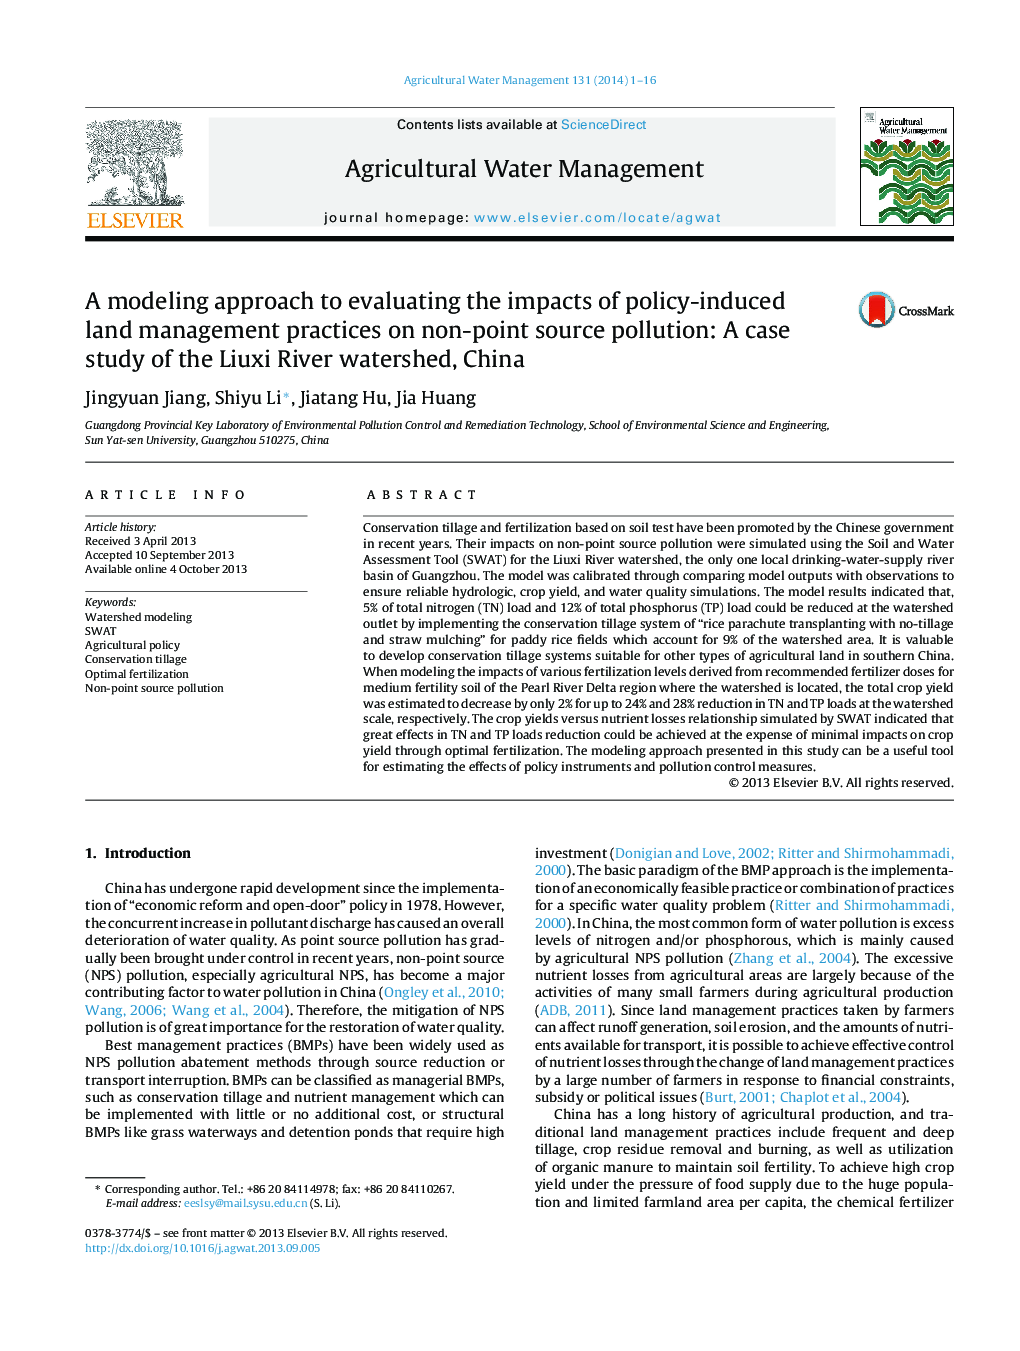 یک رویکرد مدل سازی برای ارزیابی اثرات سیاست های مدیریت بهره برداری ناشی از زمین بر آلودگی منبع غیر نقطه ای: مطالعه موردی حوزه آبخیز رودخانه لوکس، چین 